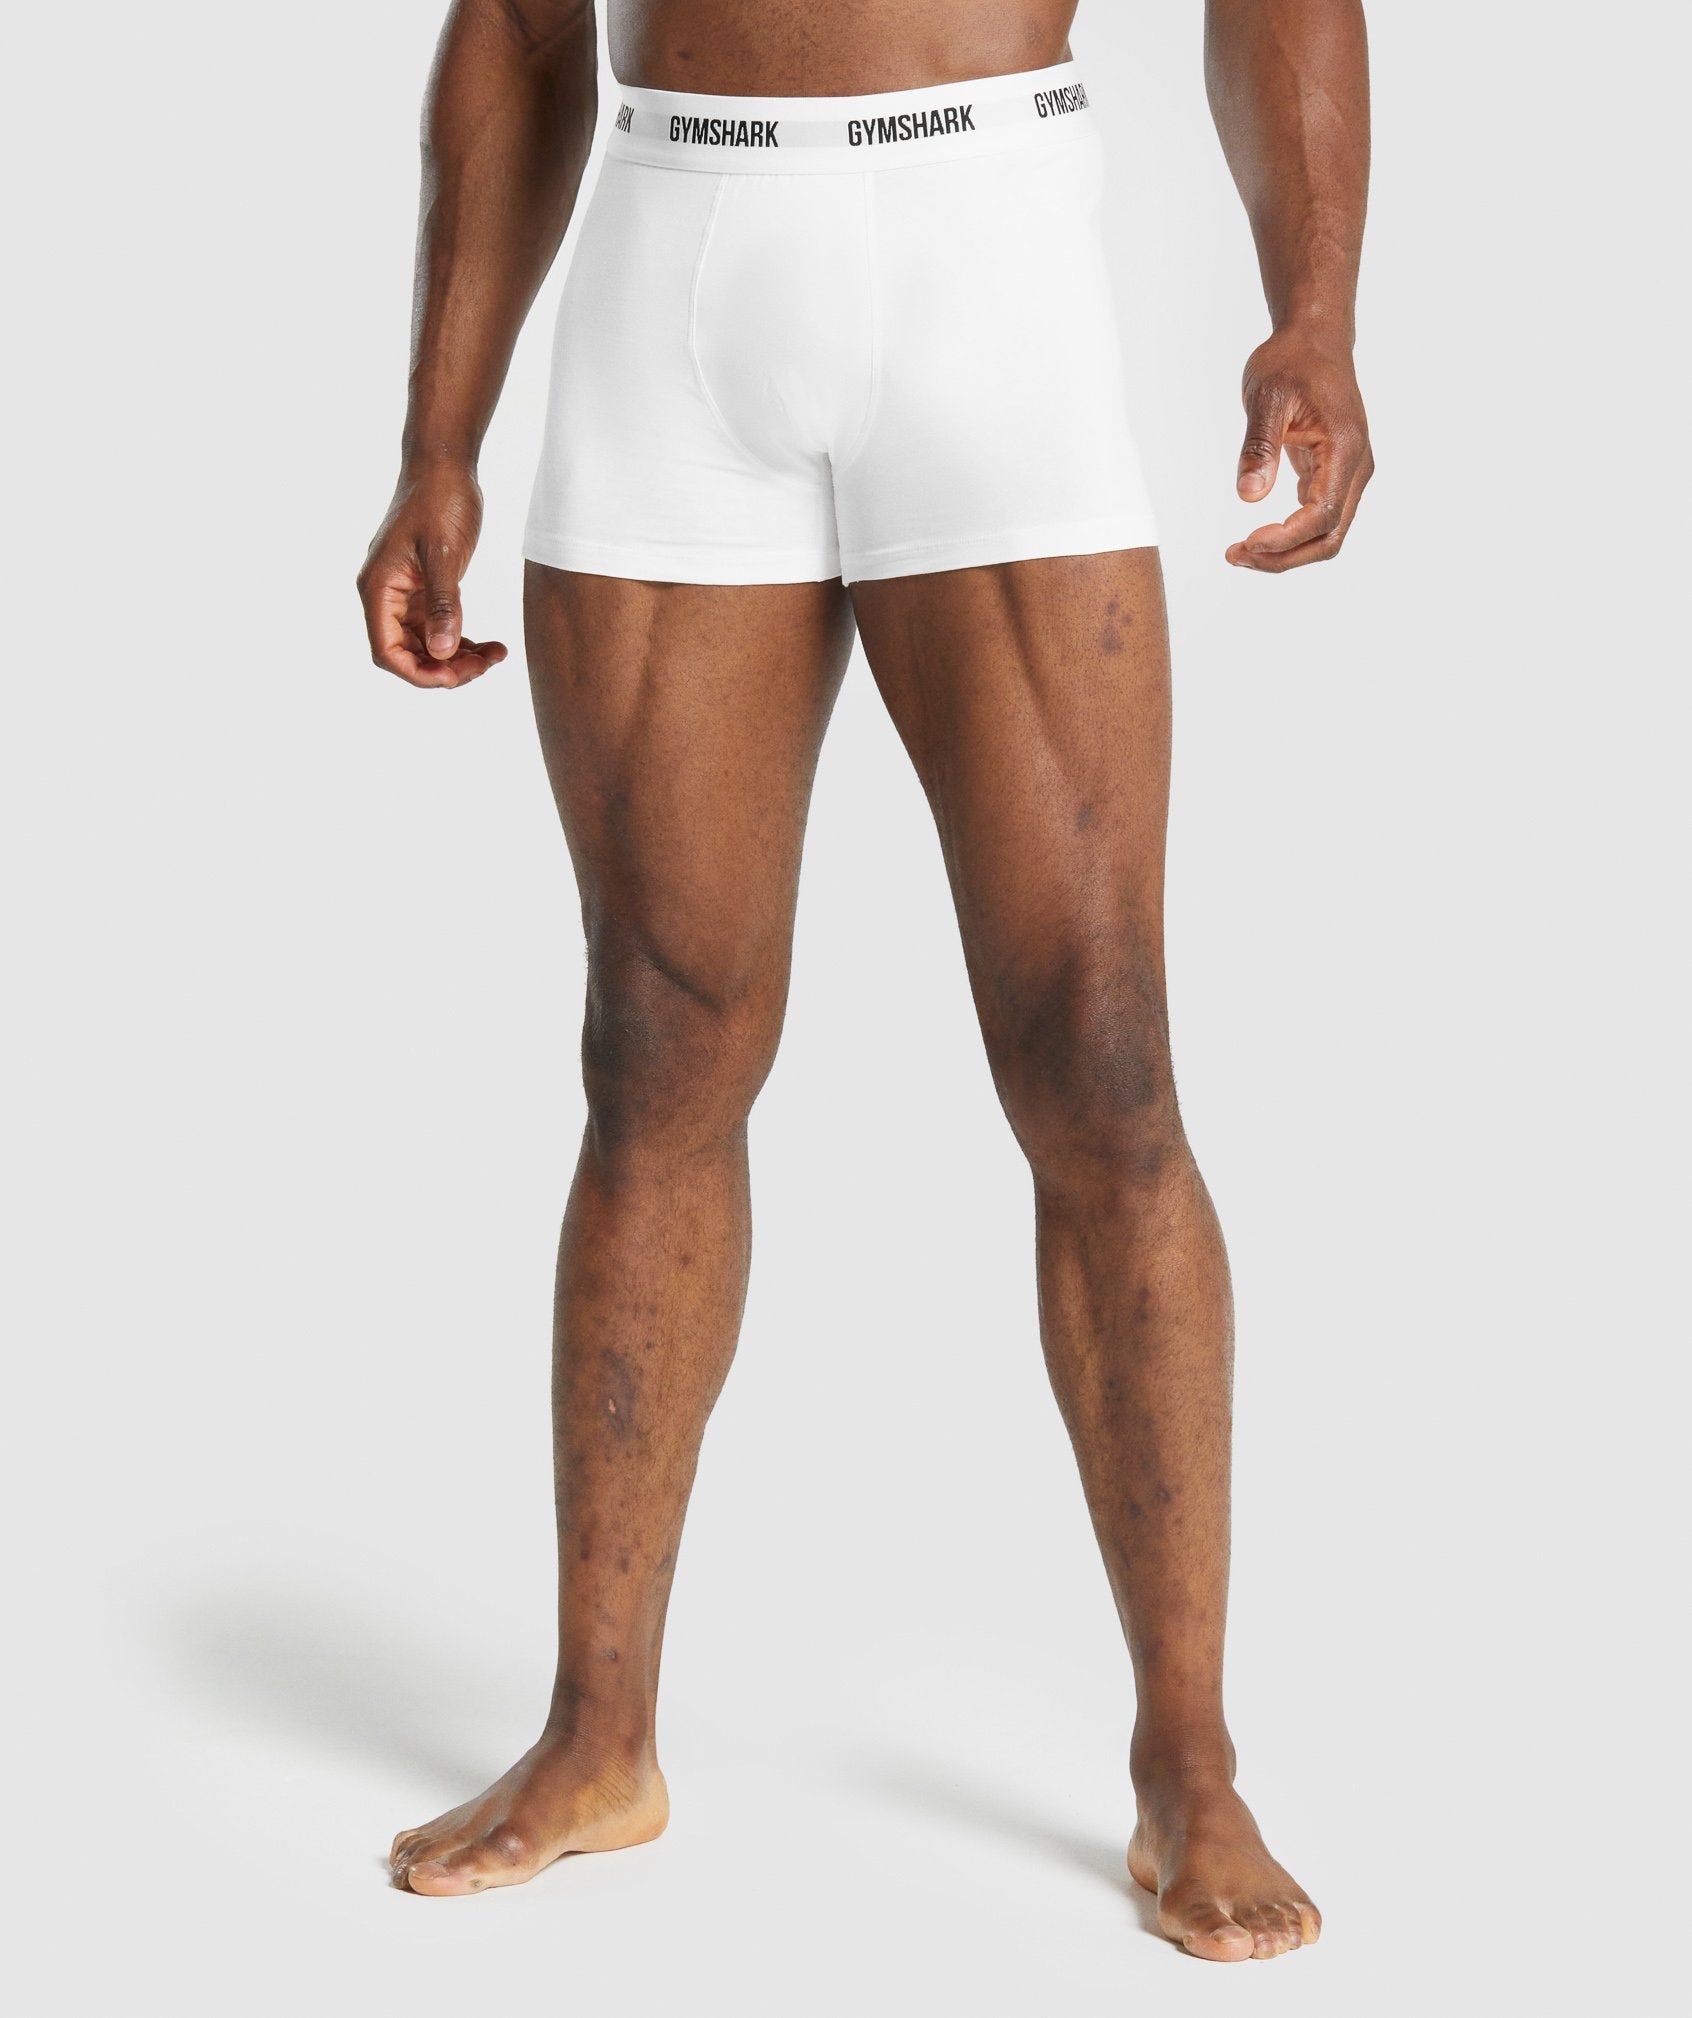 Men's Boxers & Gym Underwear - Gymshark